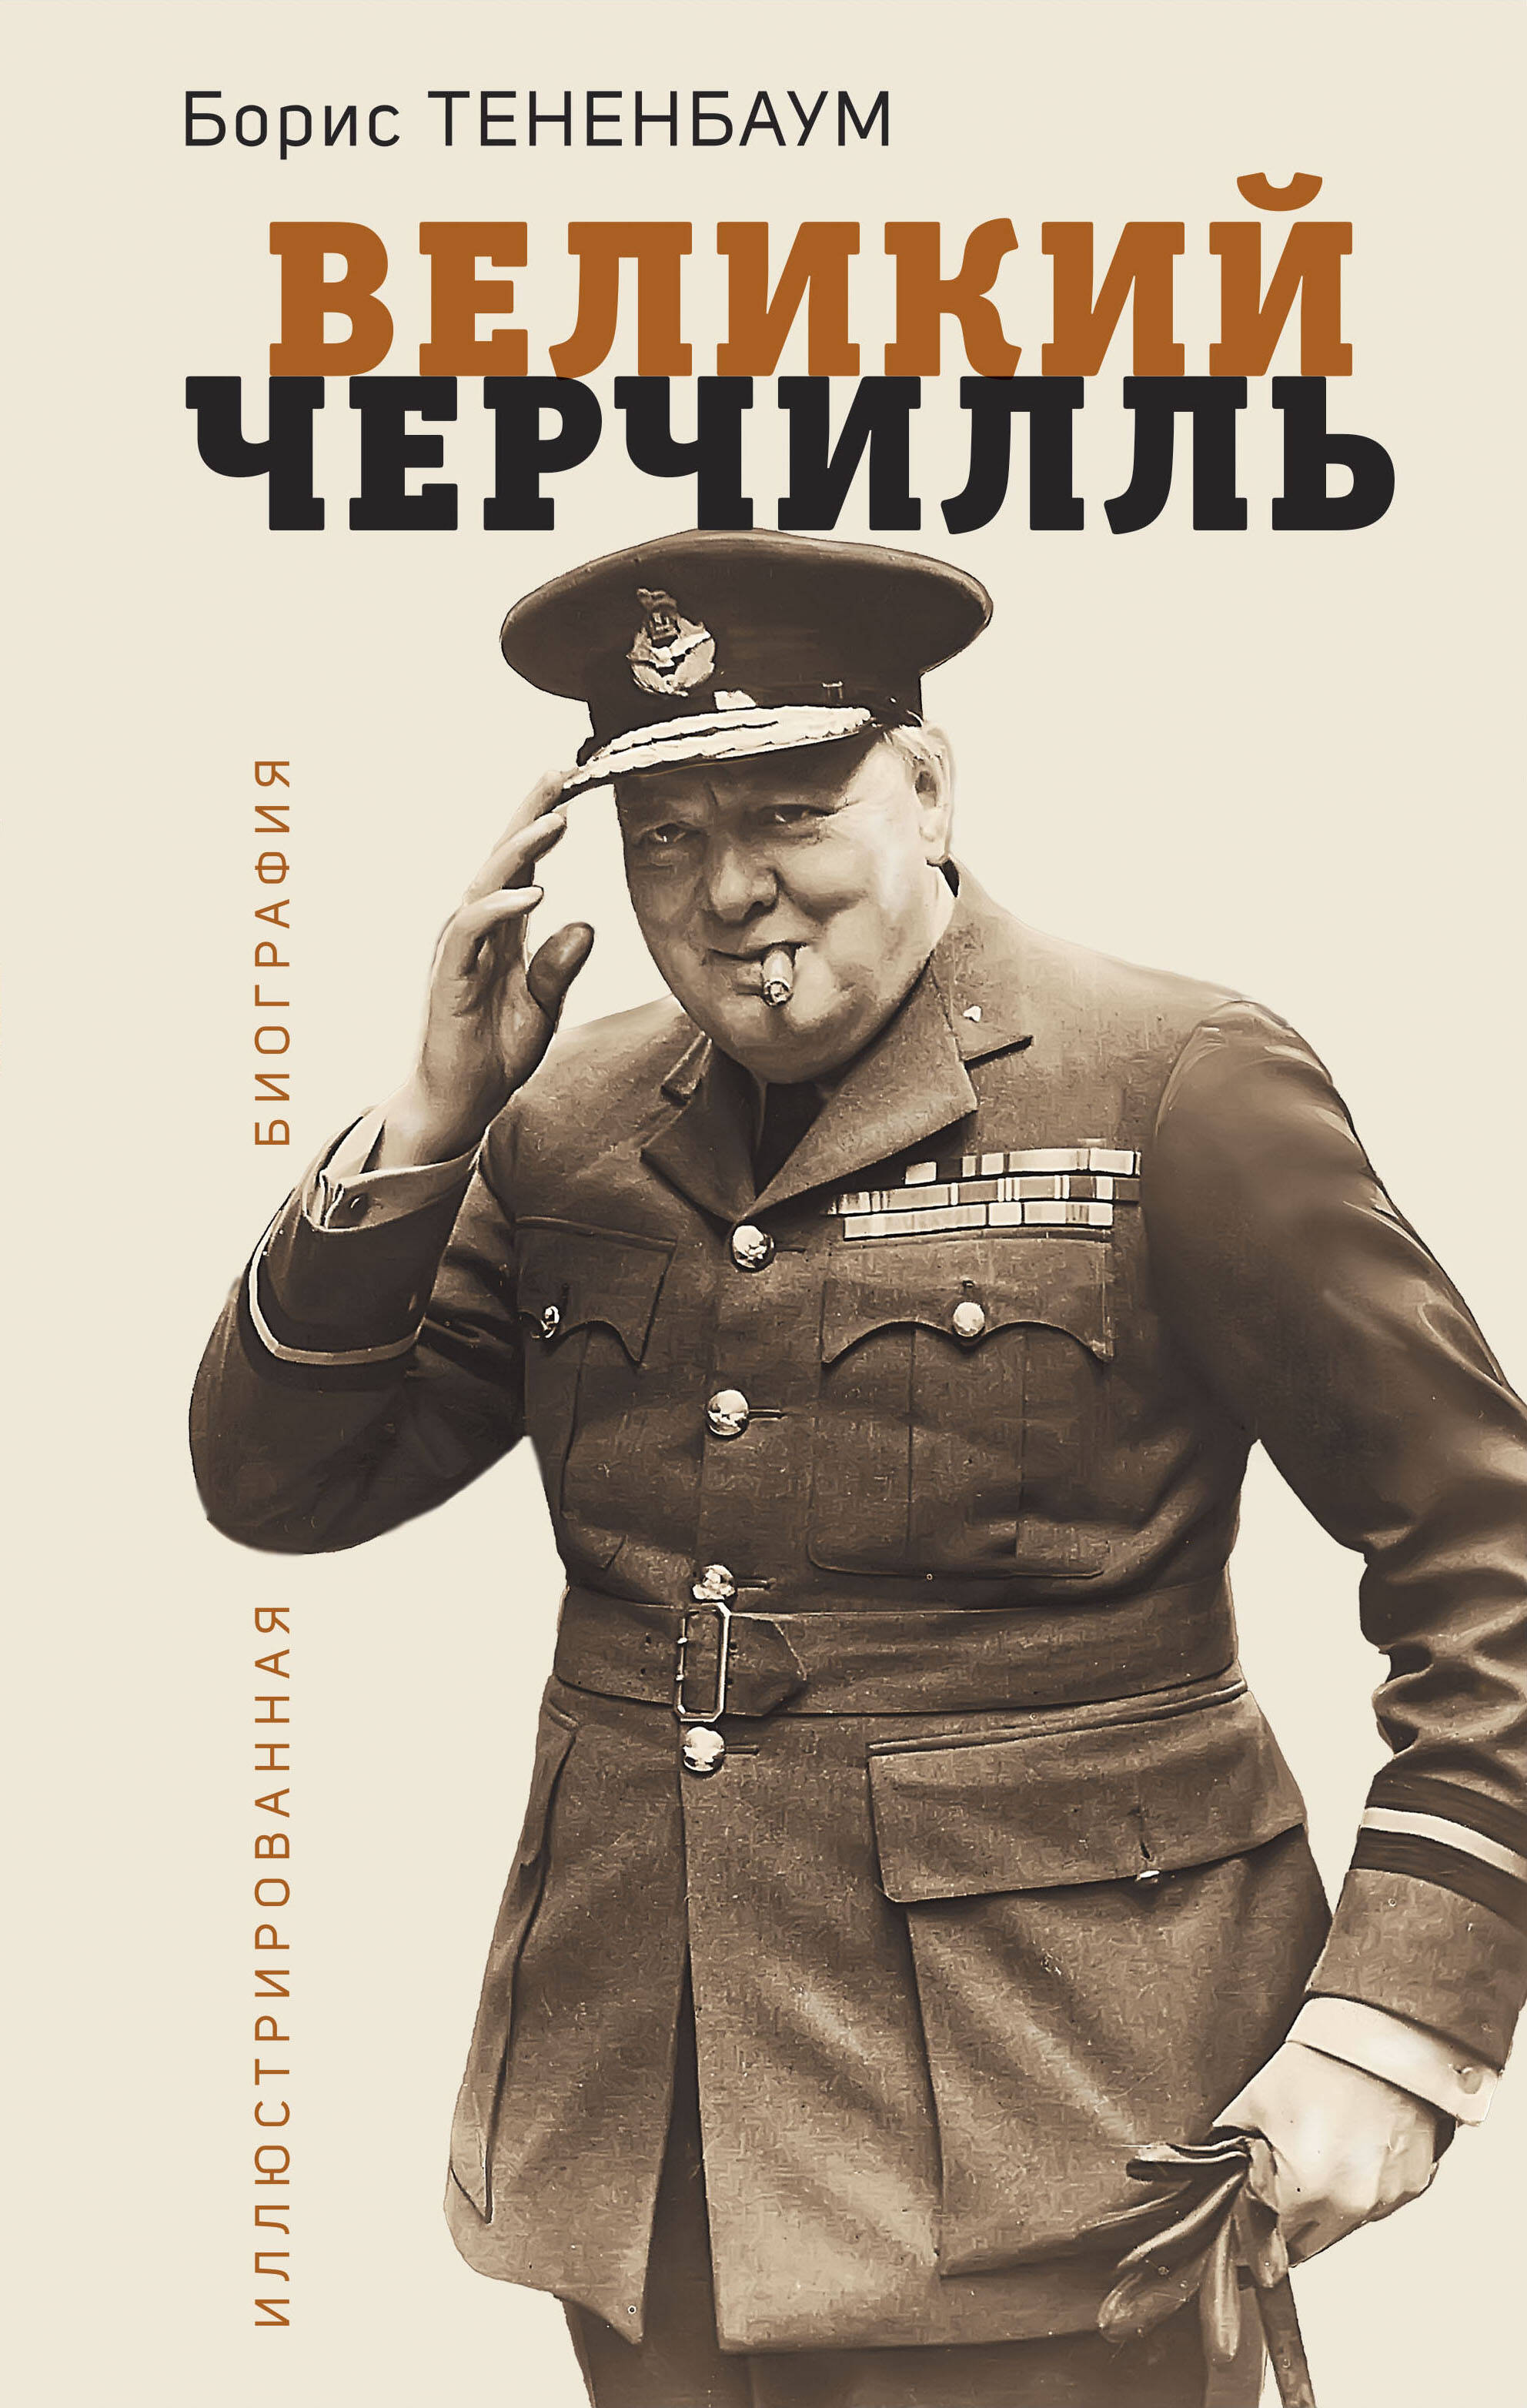 Тененбаум Борис Великий Черчилль. Иллюстрированная биография